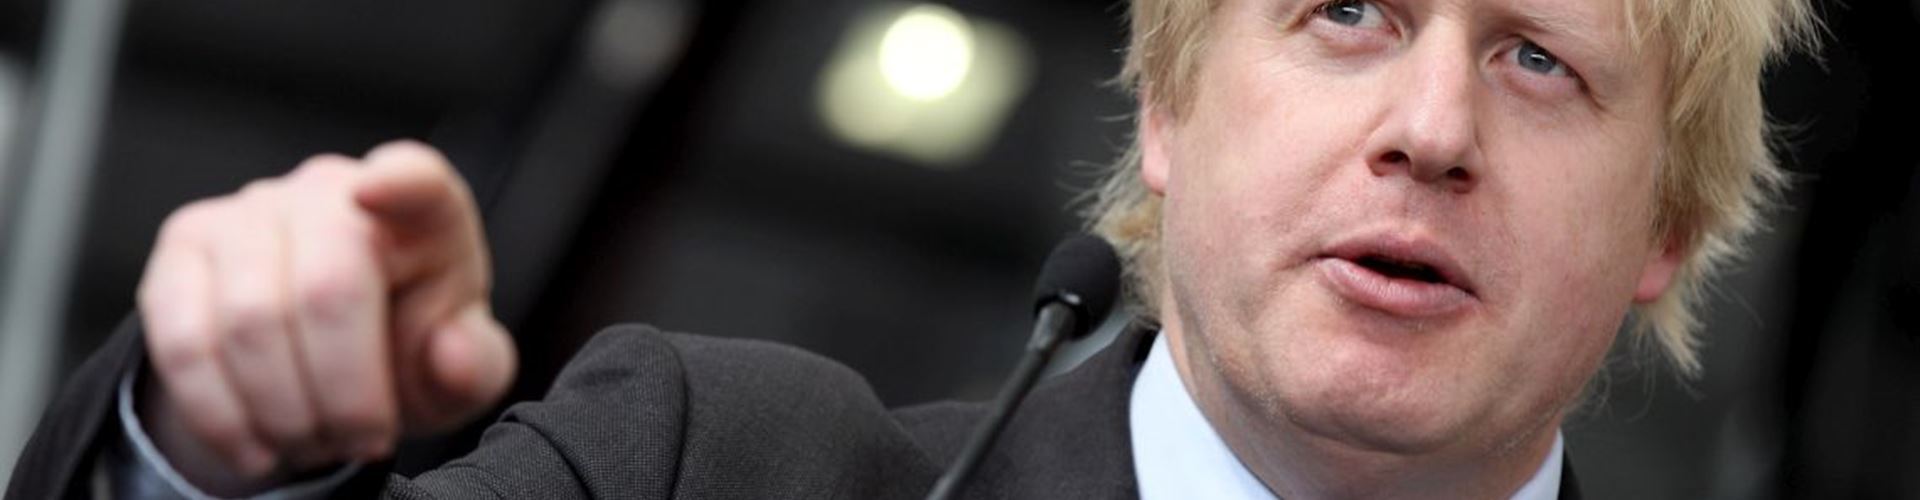 Education needs business backing, says London Mayor Boris Johnson